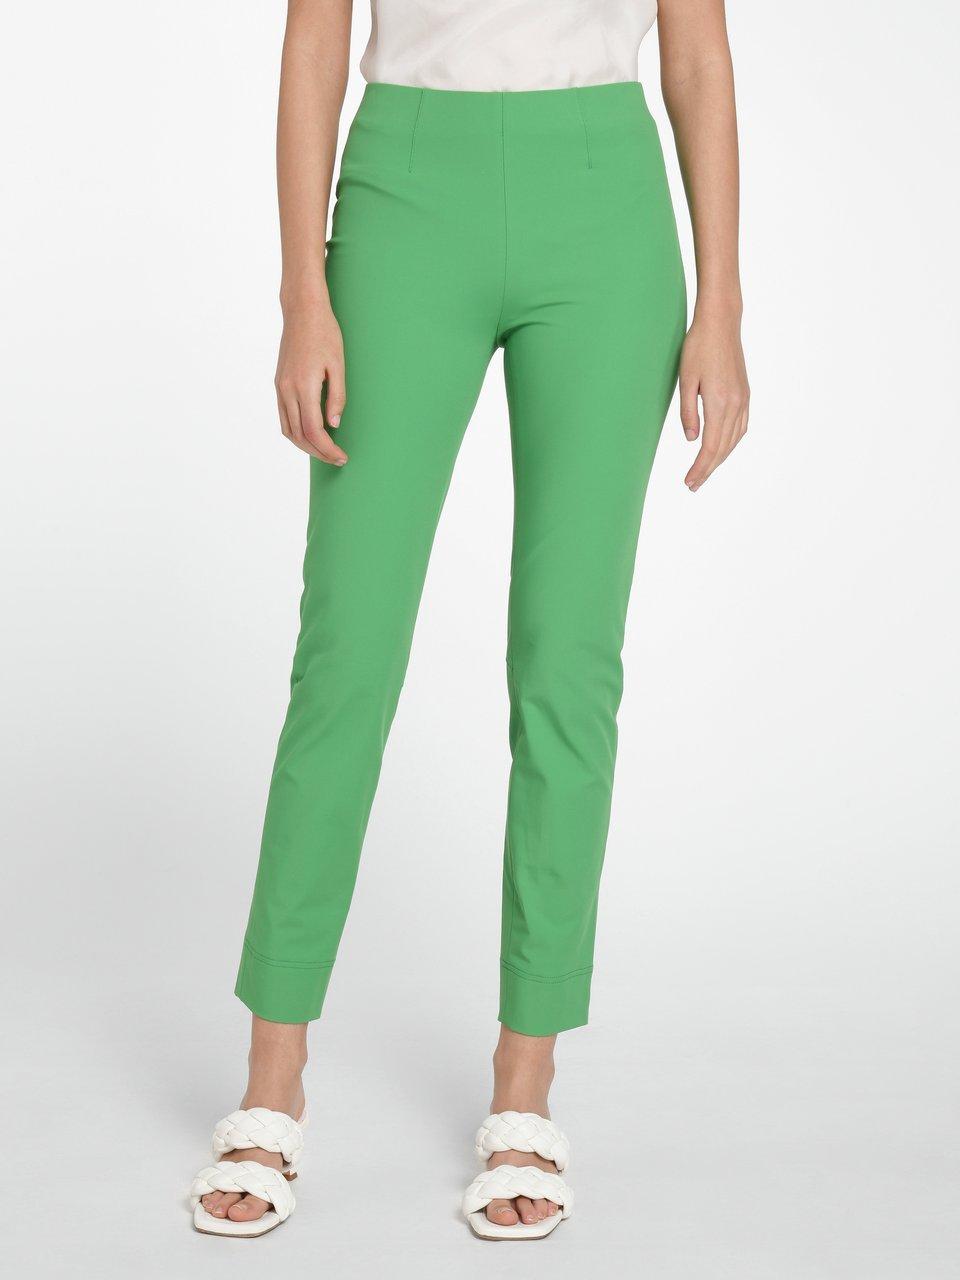 Grüne Hose, grüne Jeans und grüne Leggings  : Modeblog  & Lifestyleblog